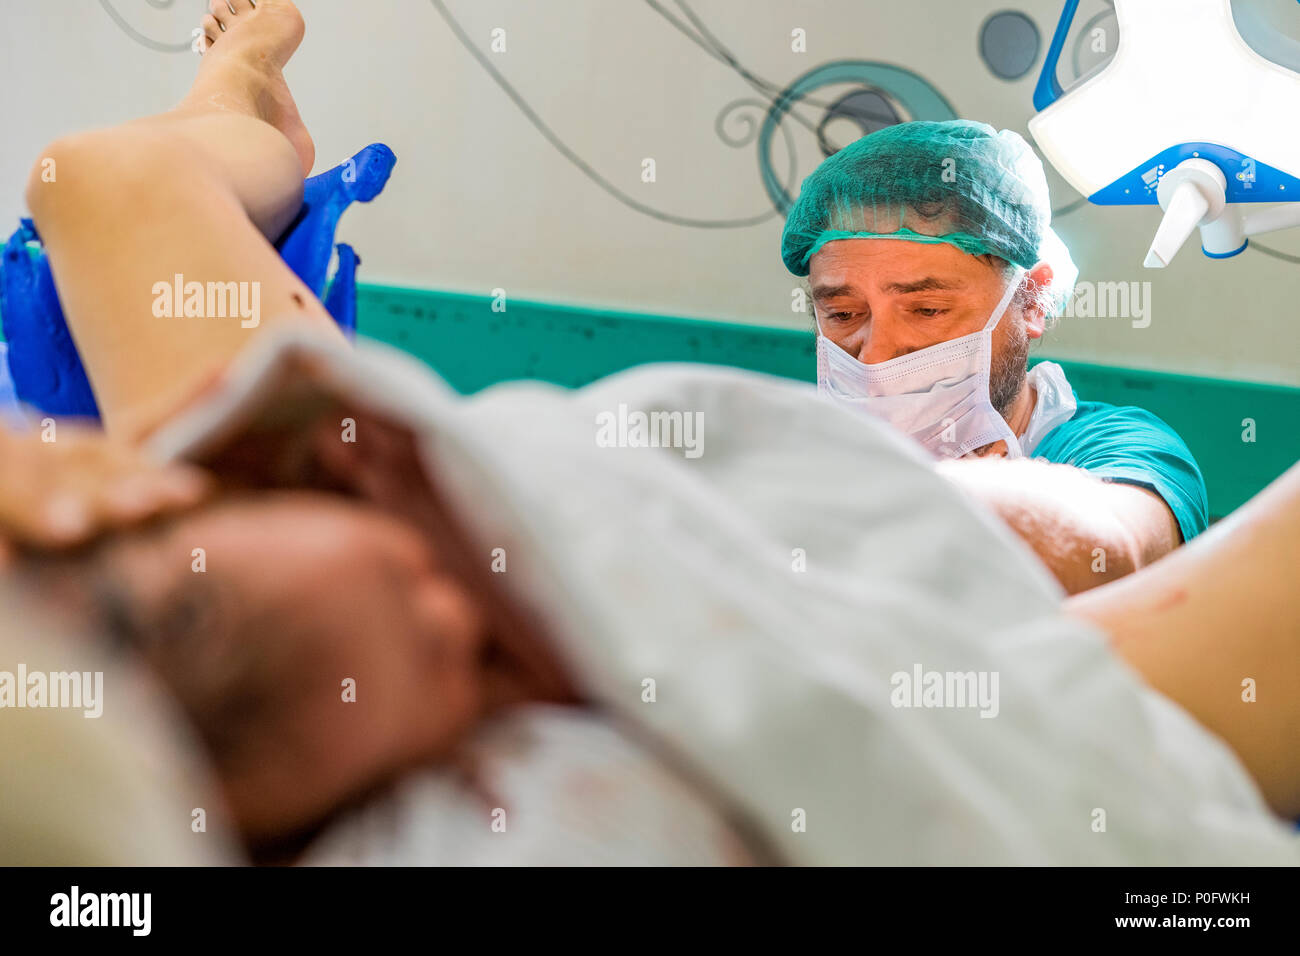 Faro, Portogallo - 7 Maggio 2018: Il medico e carino neonato ragazzo solo dopo il parto in primo piano Foto Stock